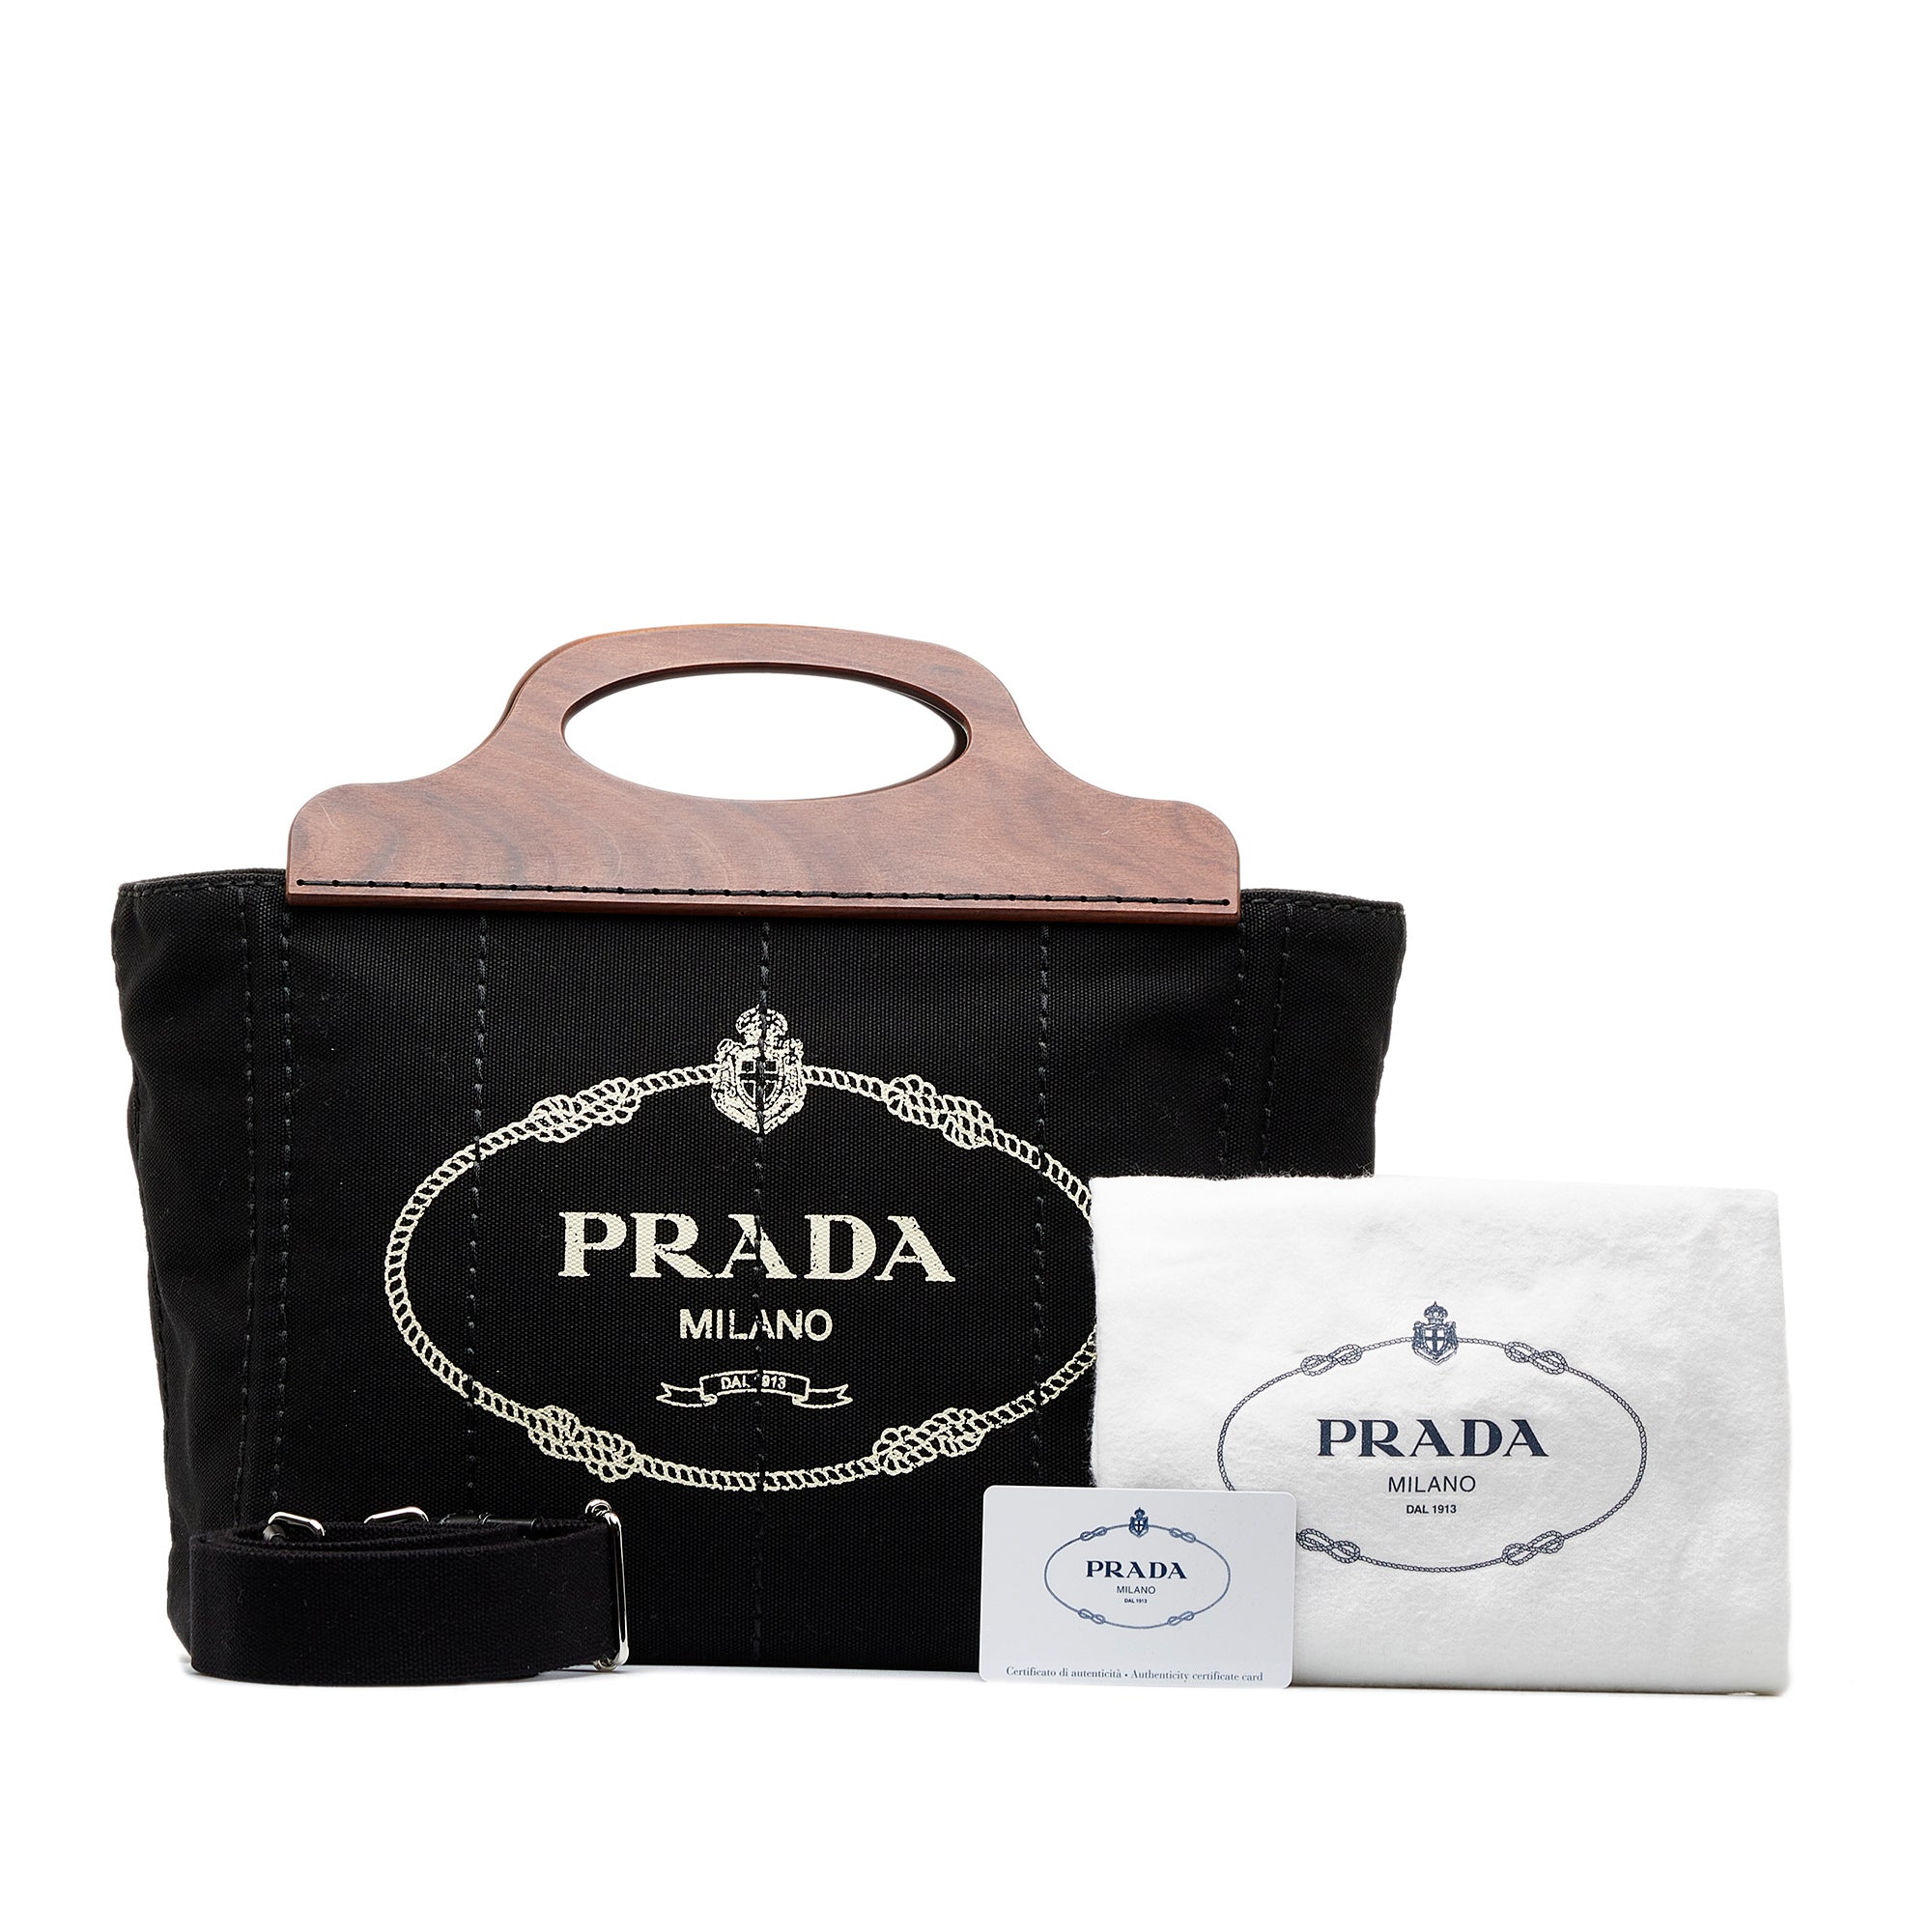 Prada, Bags, Prada Milano Dal 913 Shoulder Bag